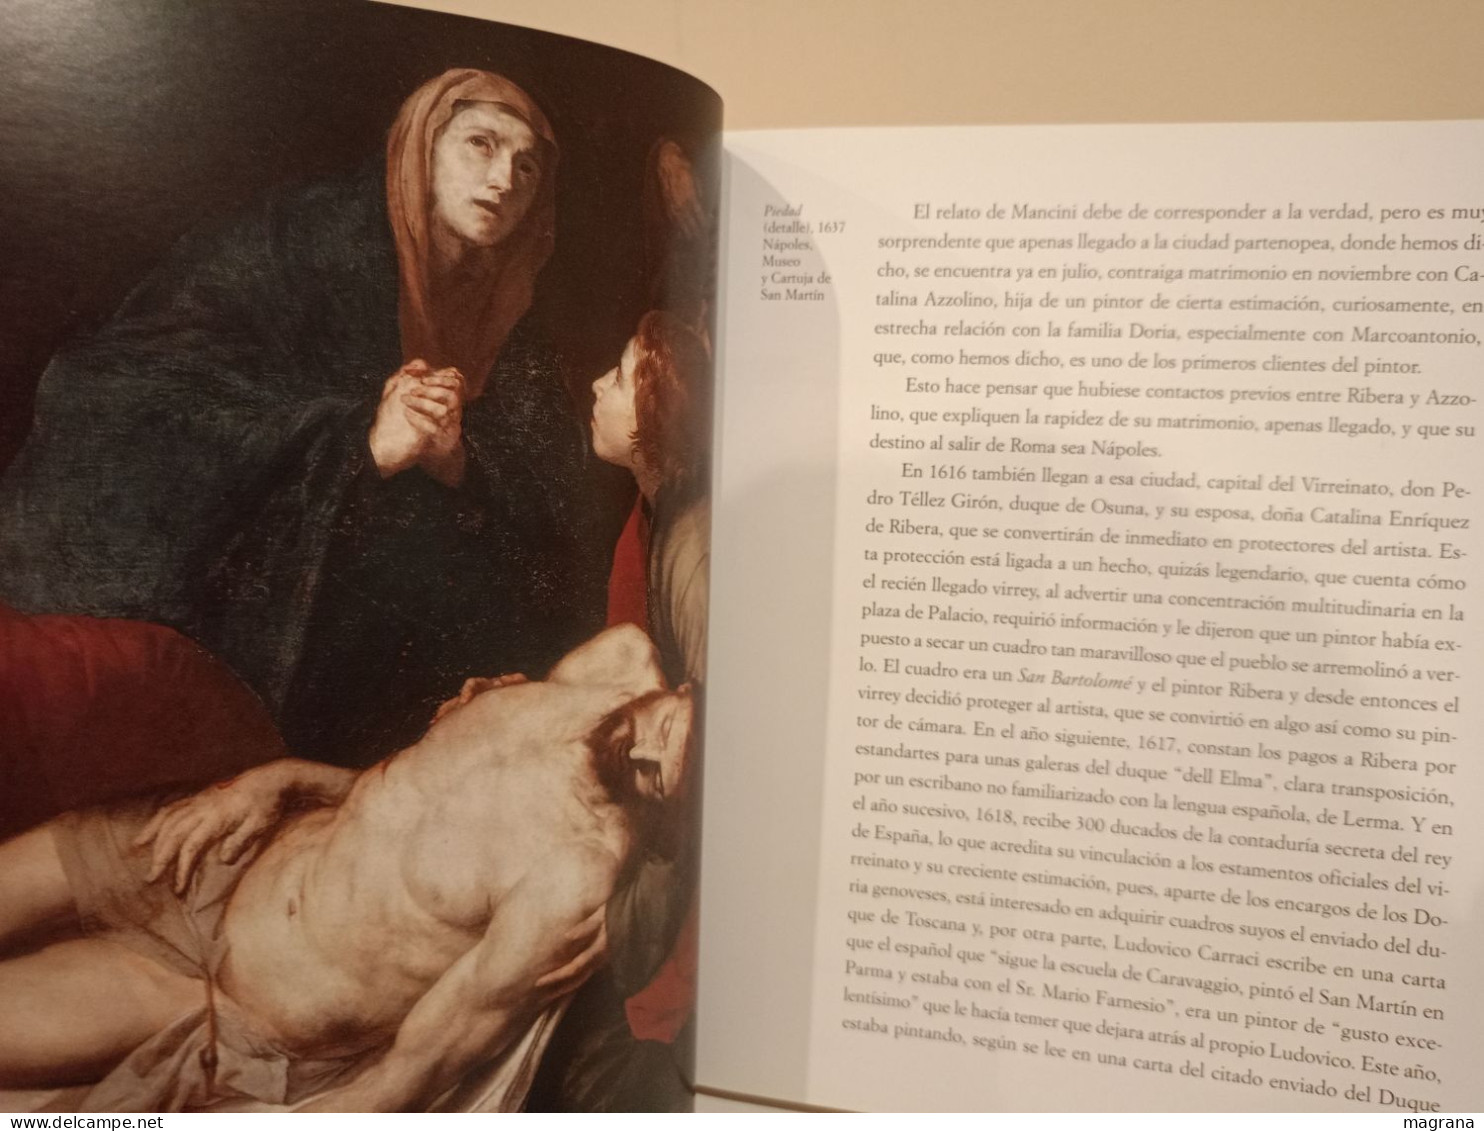 Ribera. Los Grandes Genios del Arte. (8) Biblioteca el Mundo. 2004. 191 pp